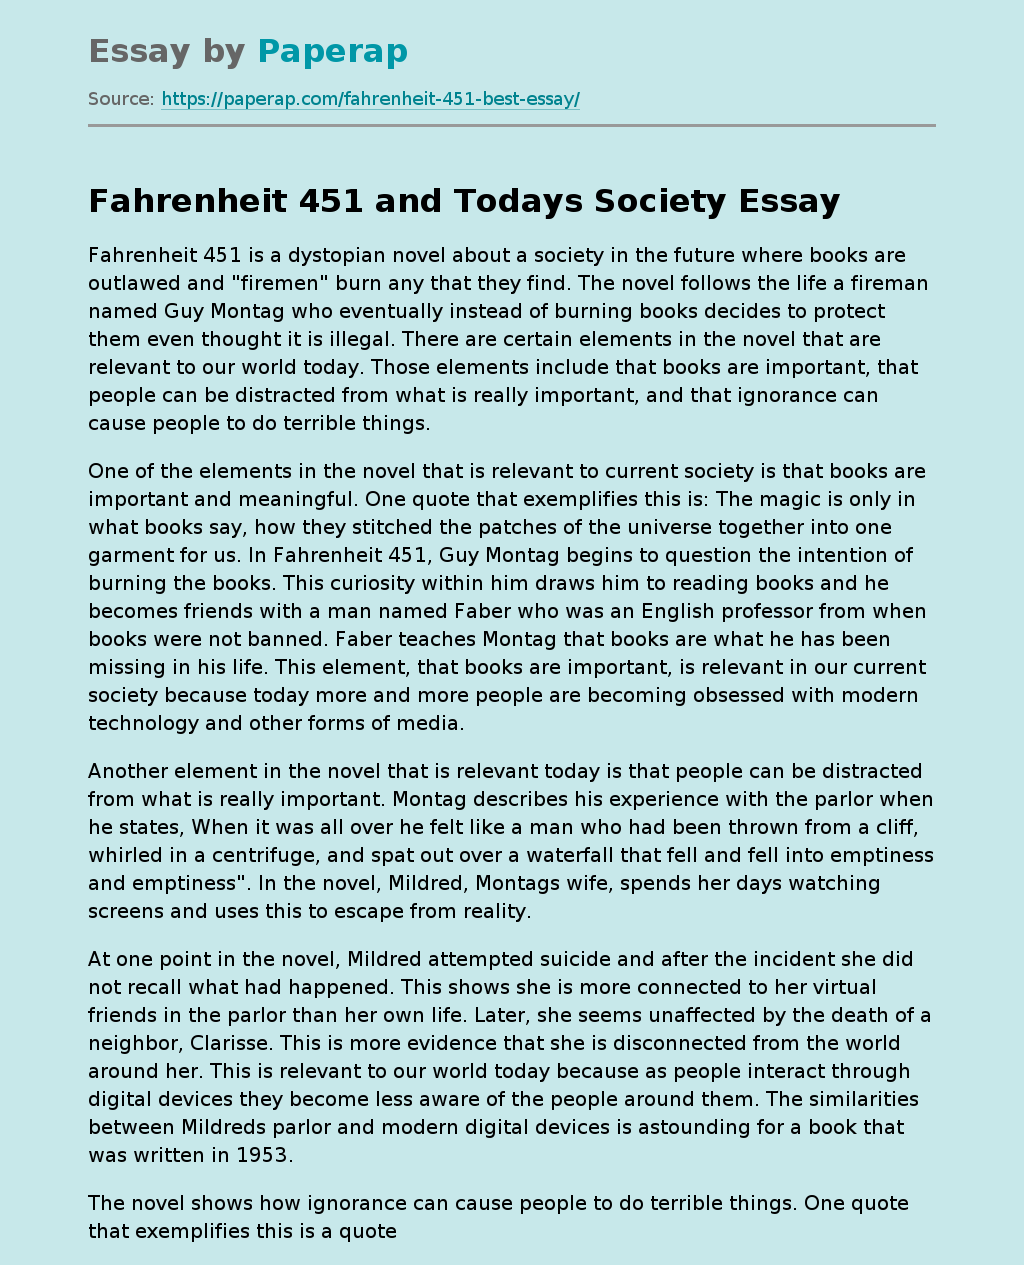 Fahrenheit 451 and Todays Society